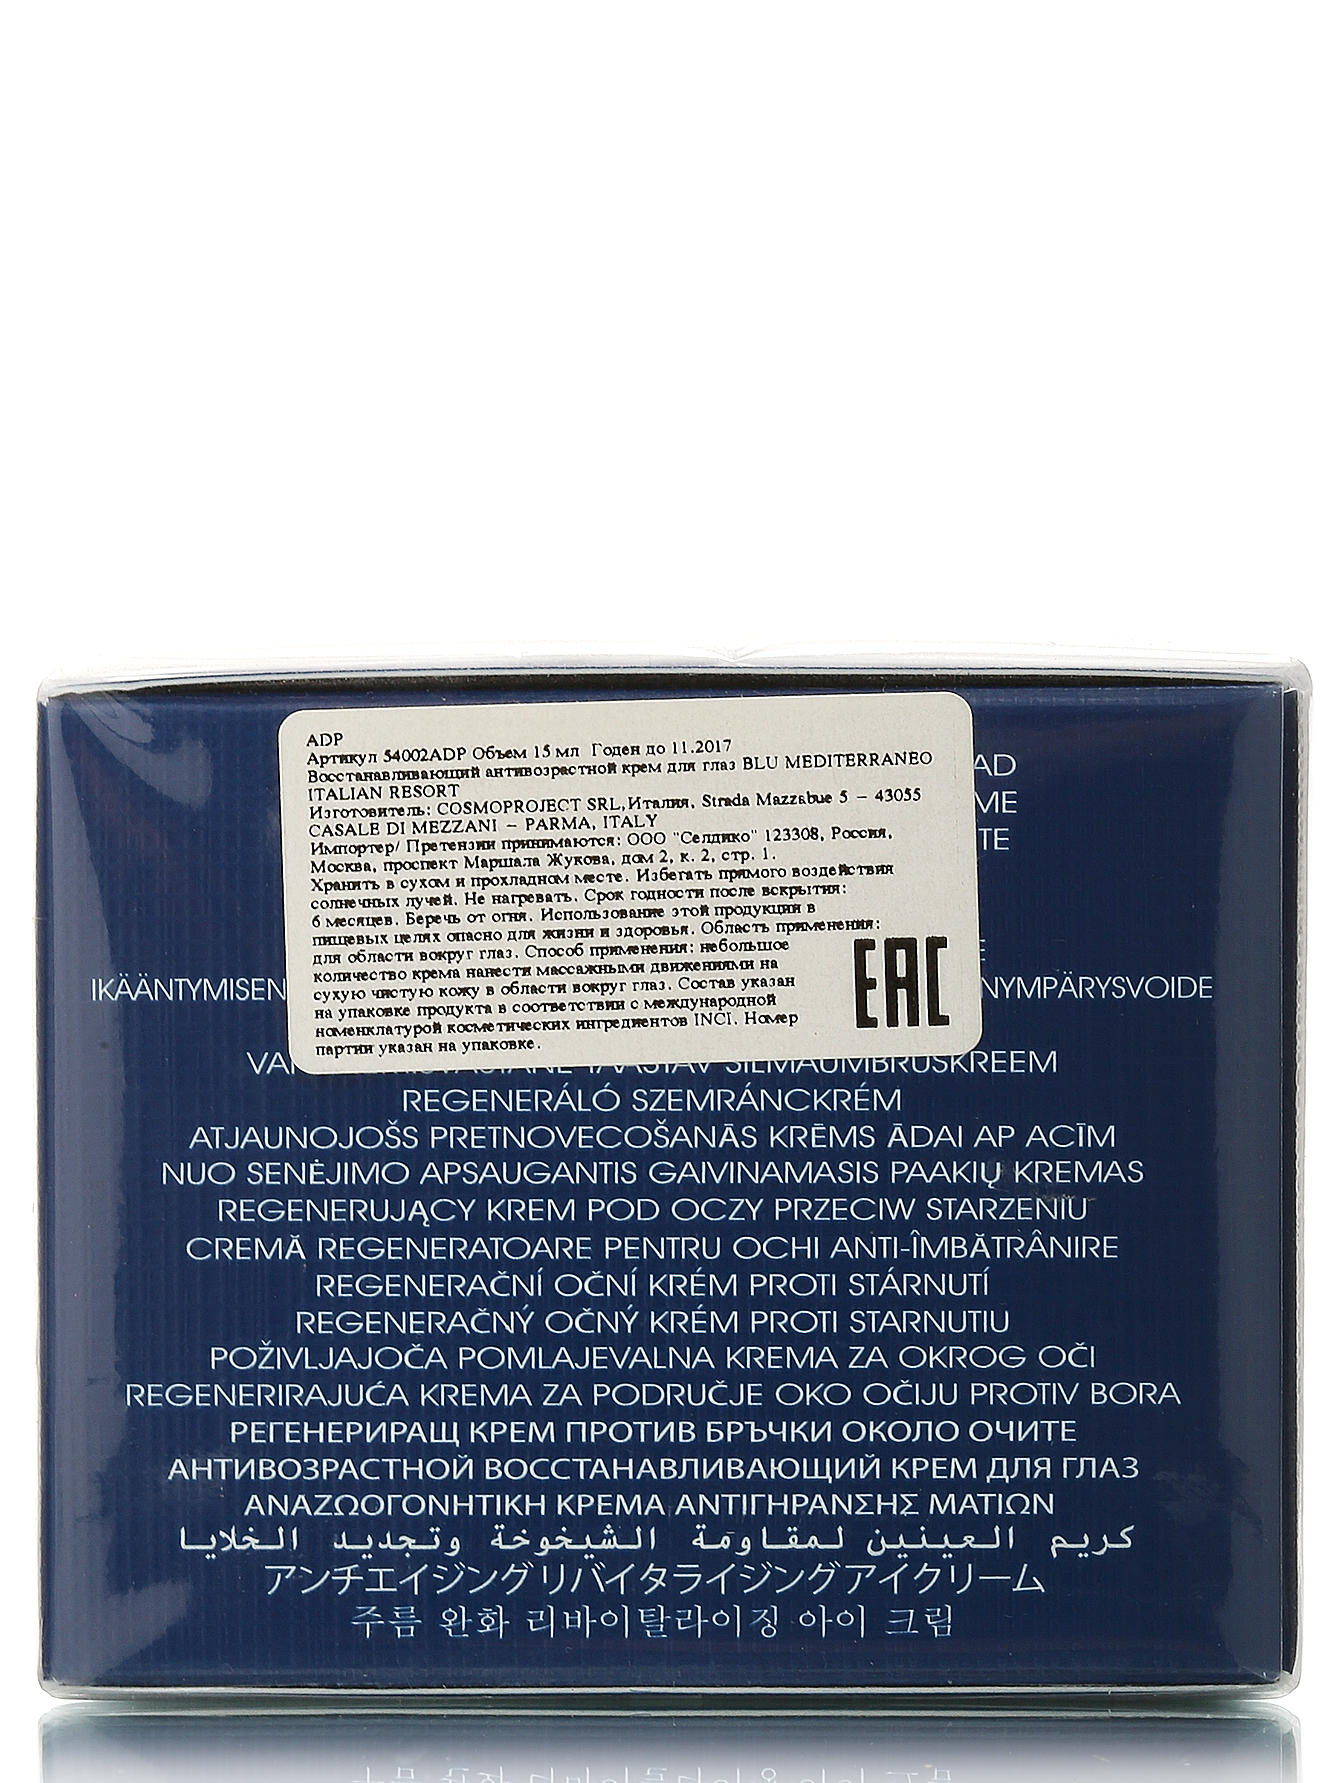 Очищающее масло для лица - Blu Mediterraneo, 200ml - Модель Верх-Низ